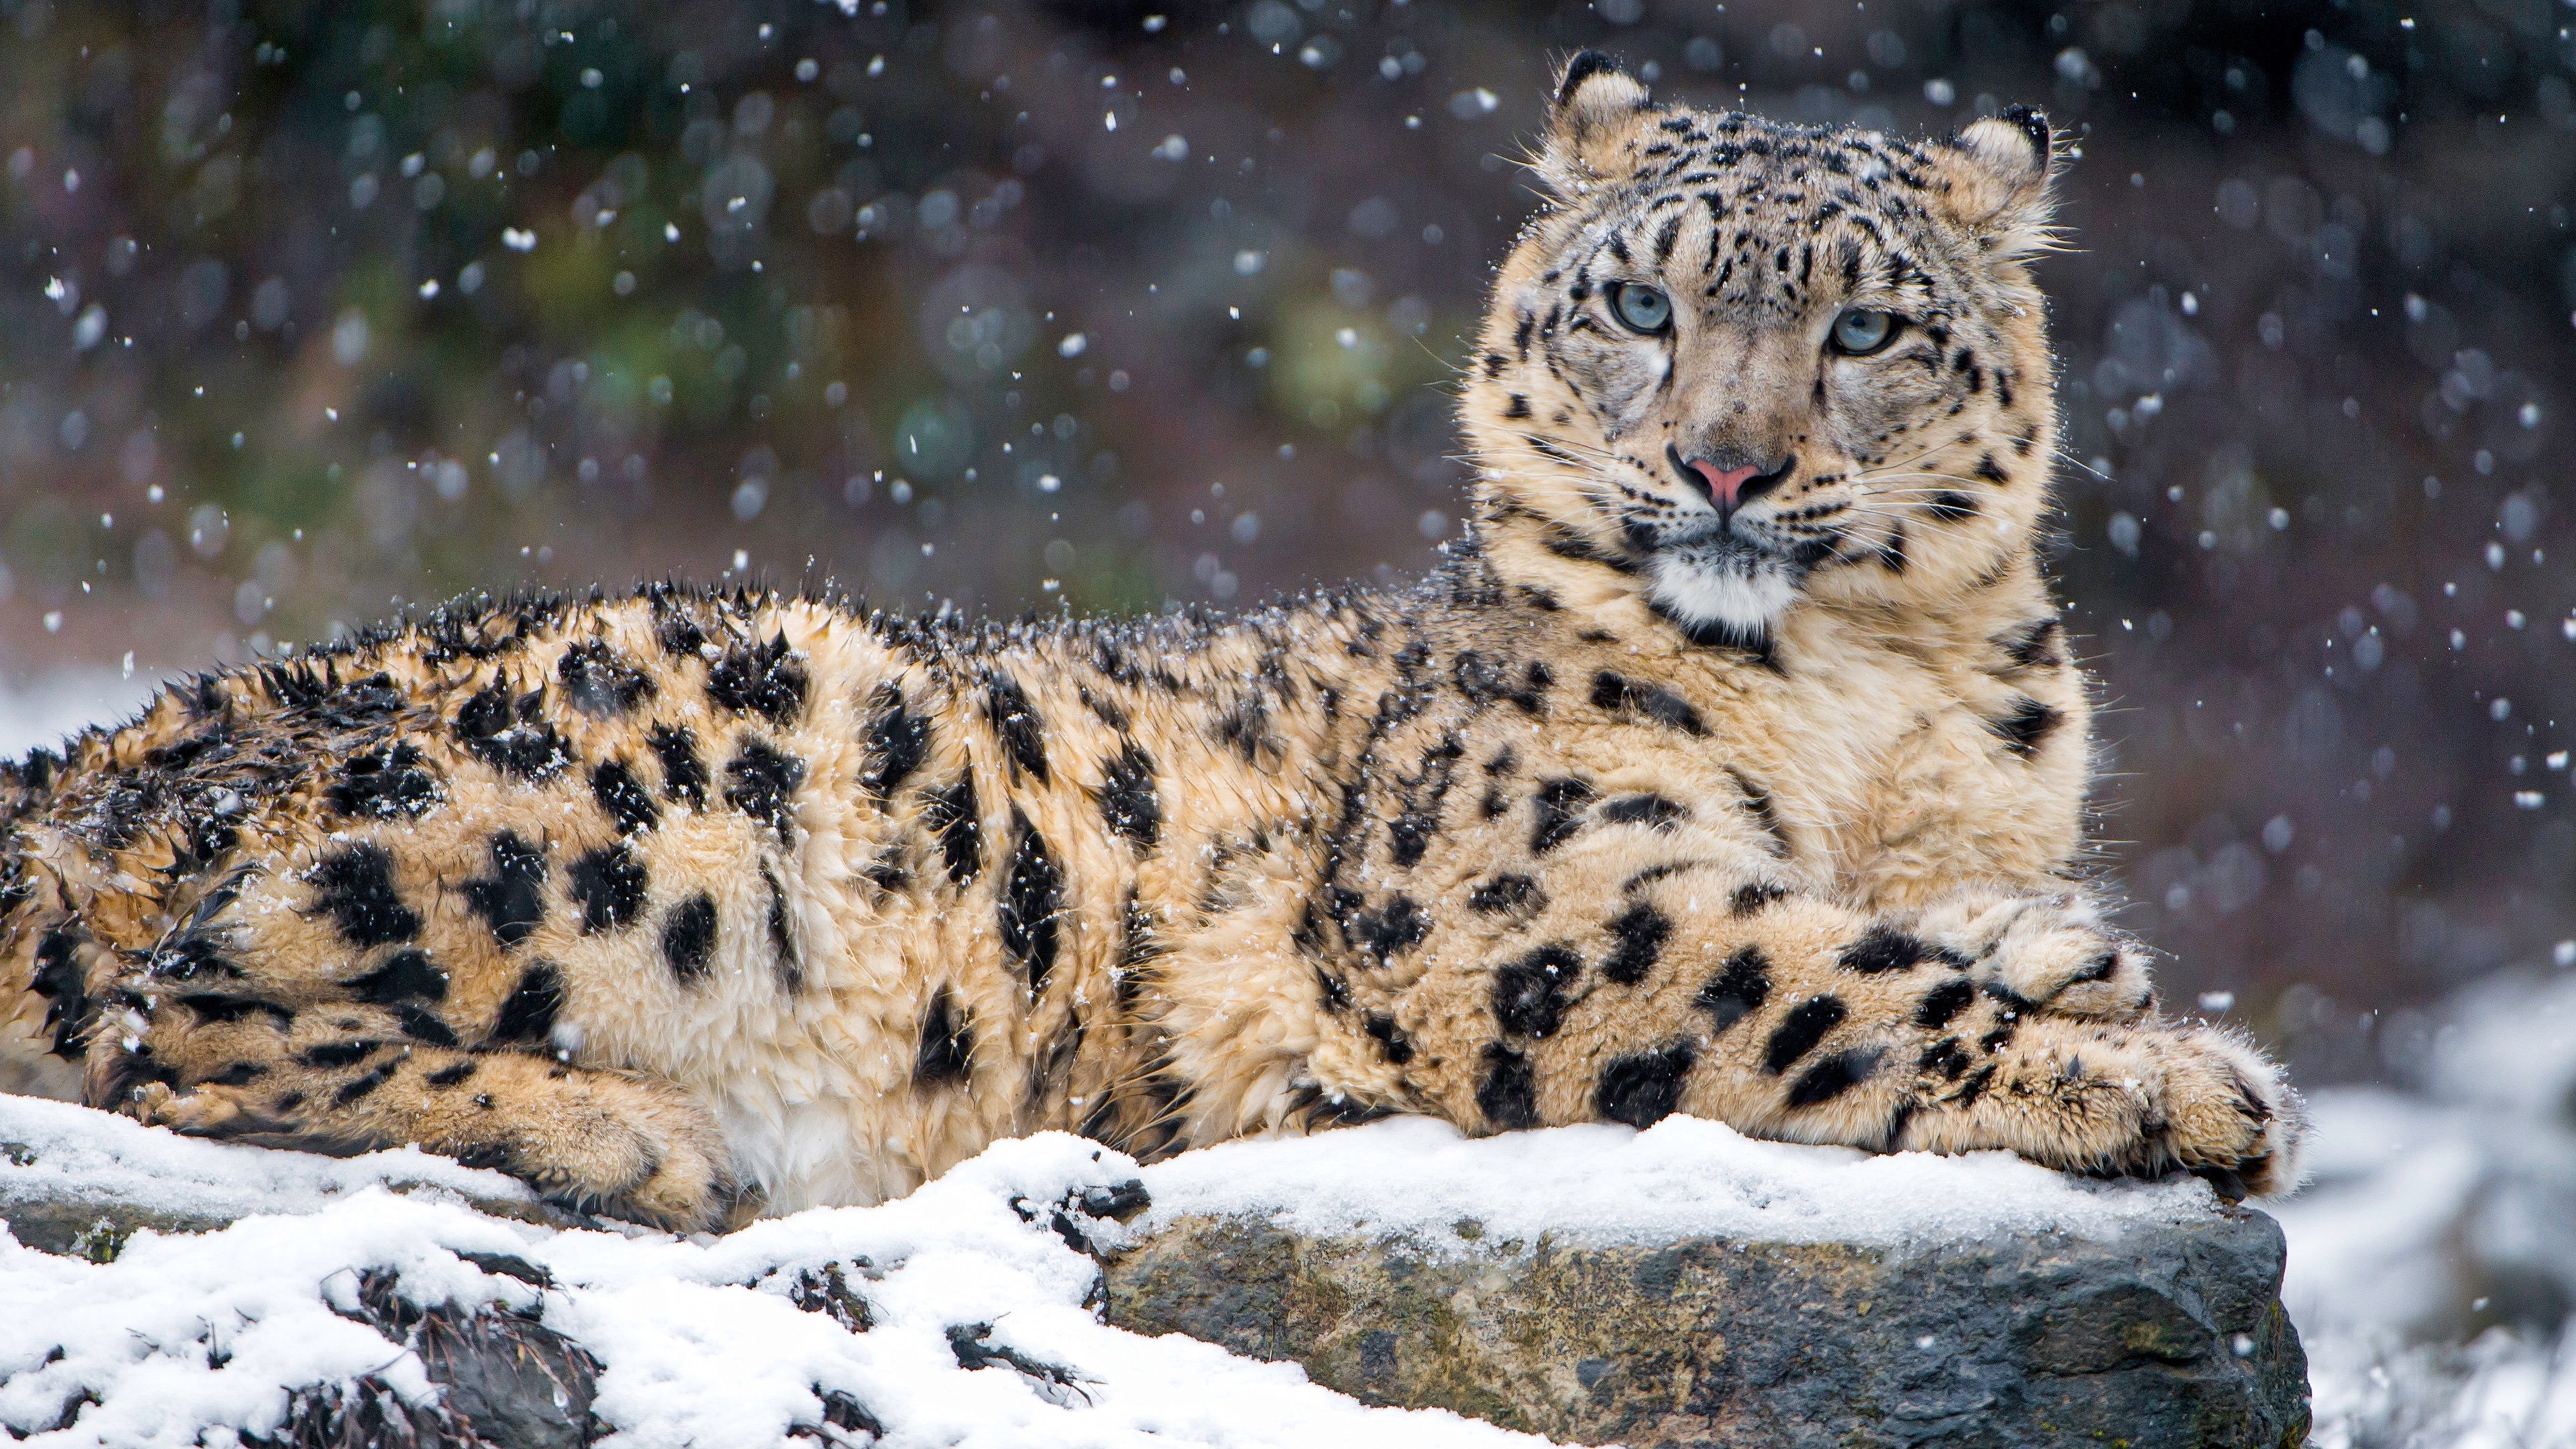  Winter Tiere Hintergrundbild 3840x2160. Leopard im winter, schnee, wild lebende tiere 3840x2160 UHD 4K Hintergrundbilder, HD, Bild